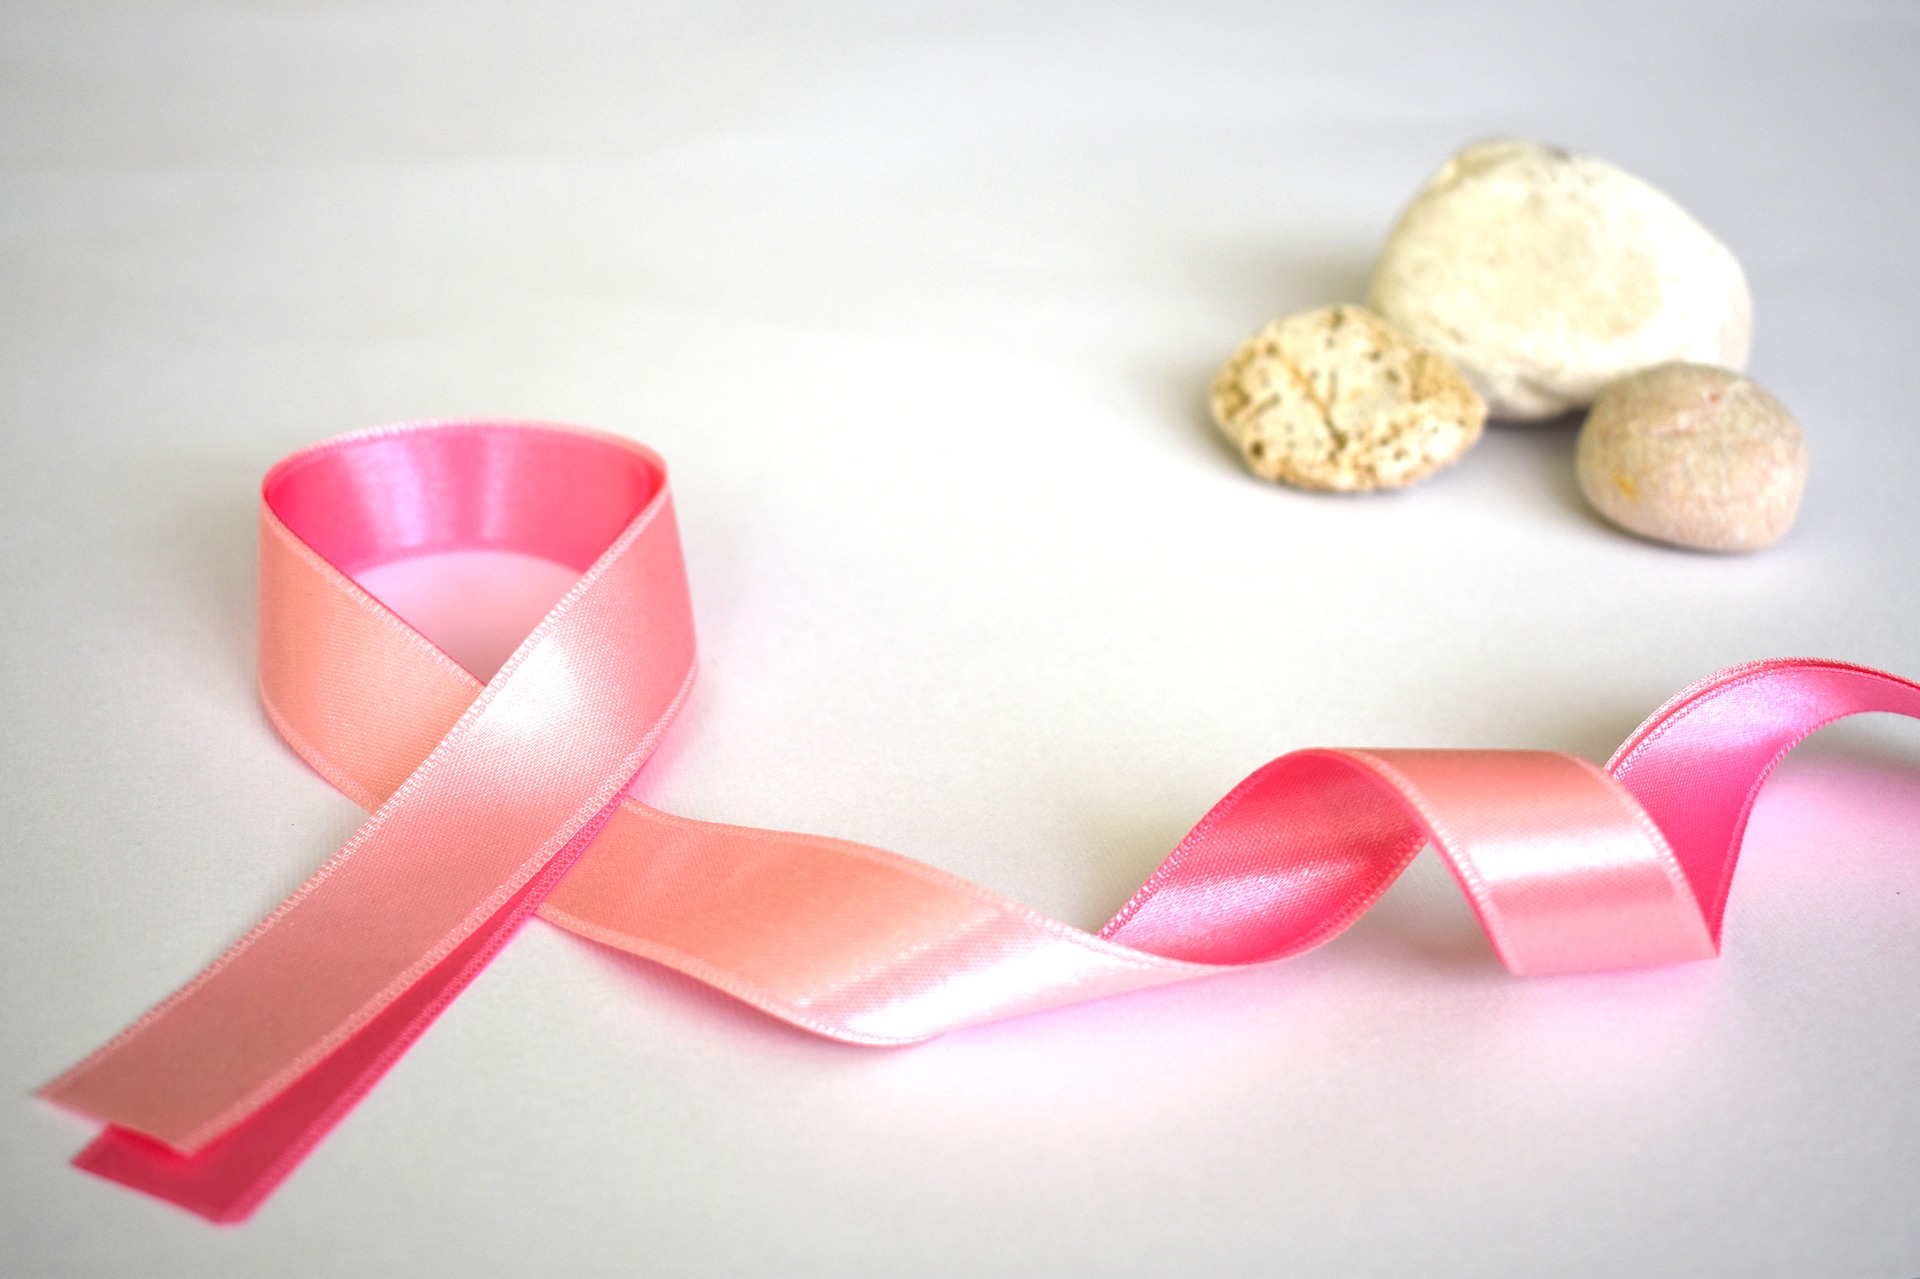 Bezpłatne badania mammograficzne w ramach programu profilaktyki raka piersi 5